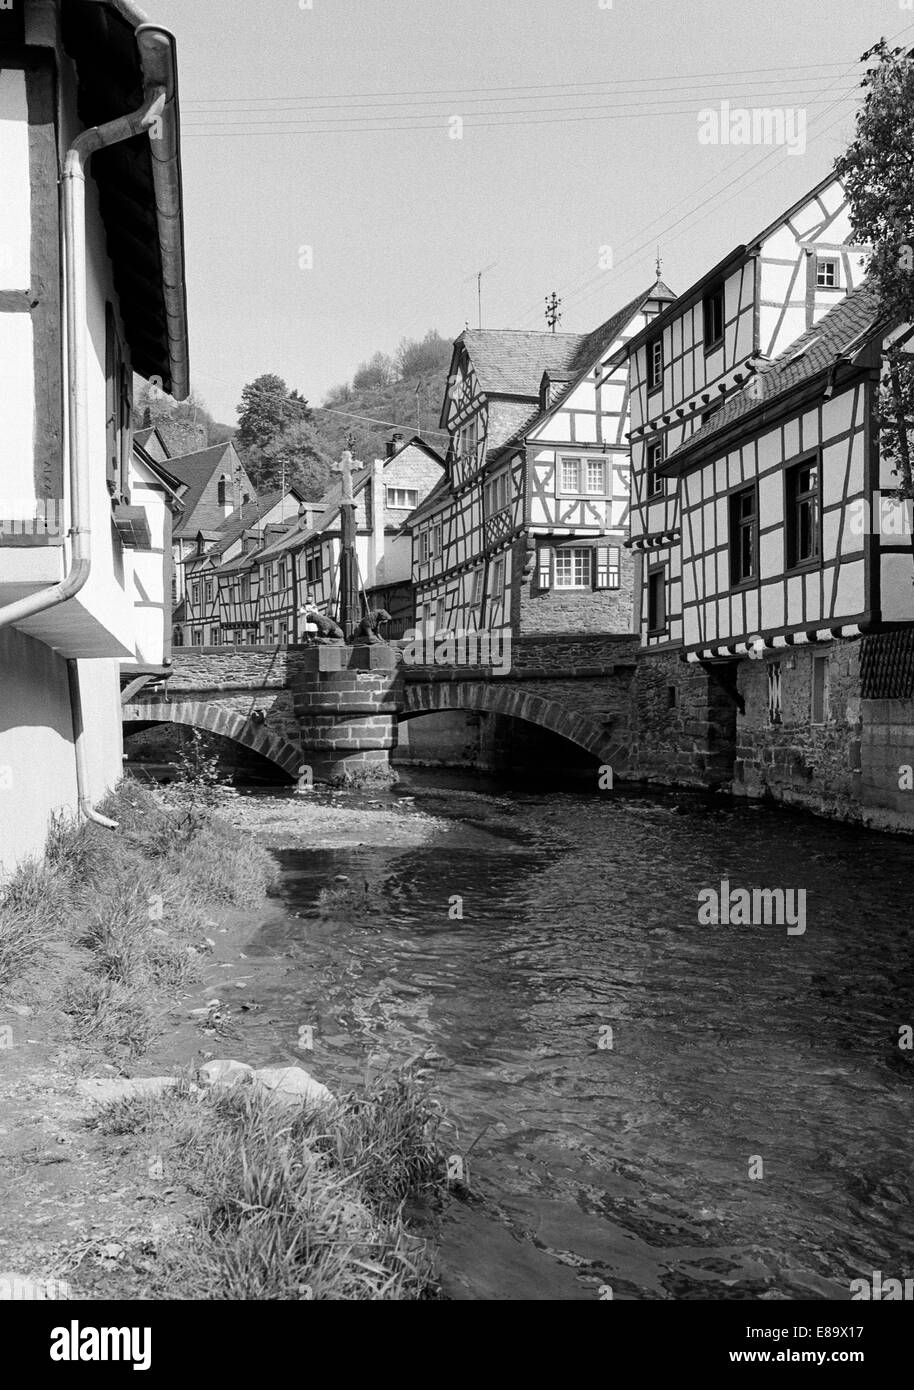 Achtziger Jahre, Fachwerkhaeuser und Elzbachbruecke in Monreal, Eifel, Rheinland-Pfalz Stock Photo